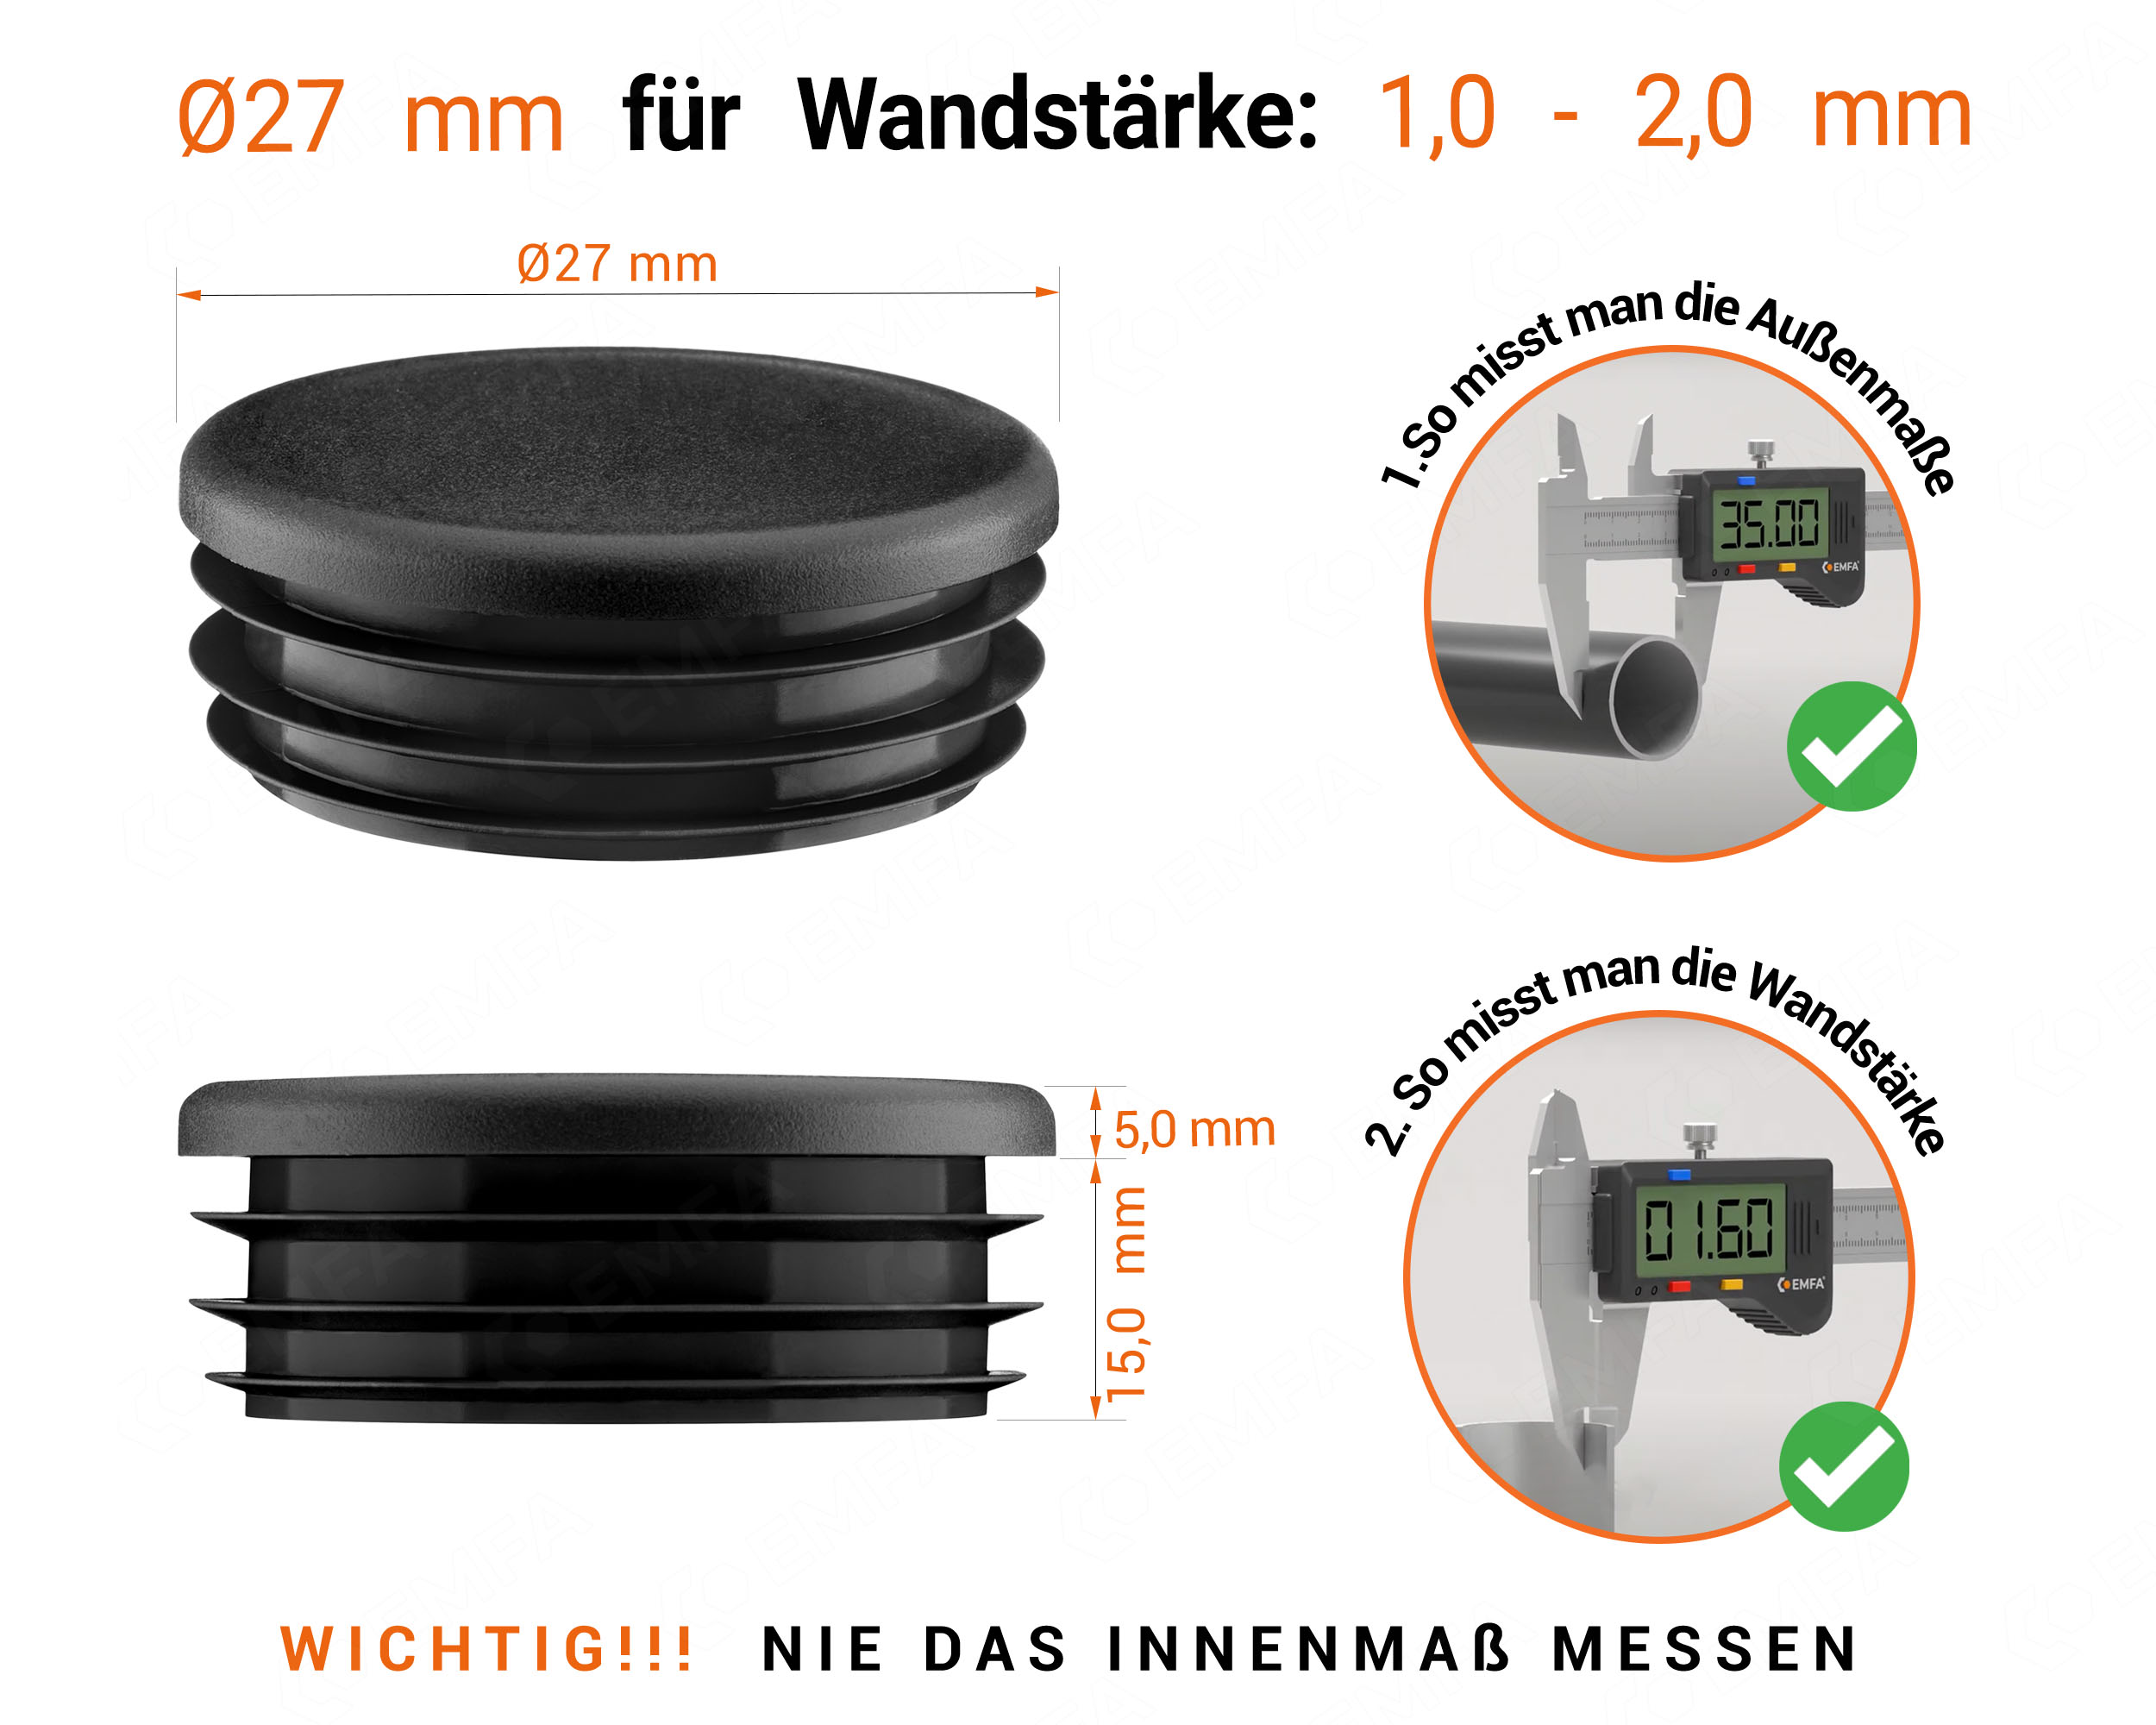 Schwarze Endkappe für Rundrohre in der Größe 27 mm mit technischen Abmessungen und Anleitung für korrekte Messung